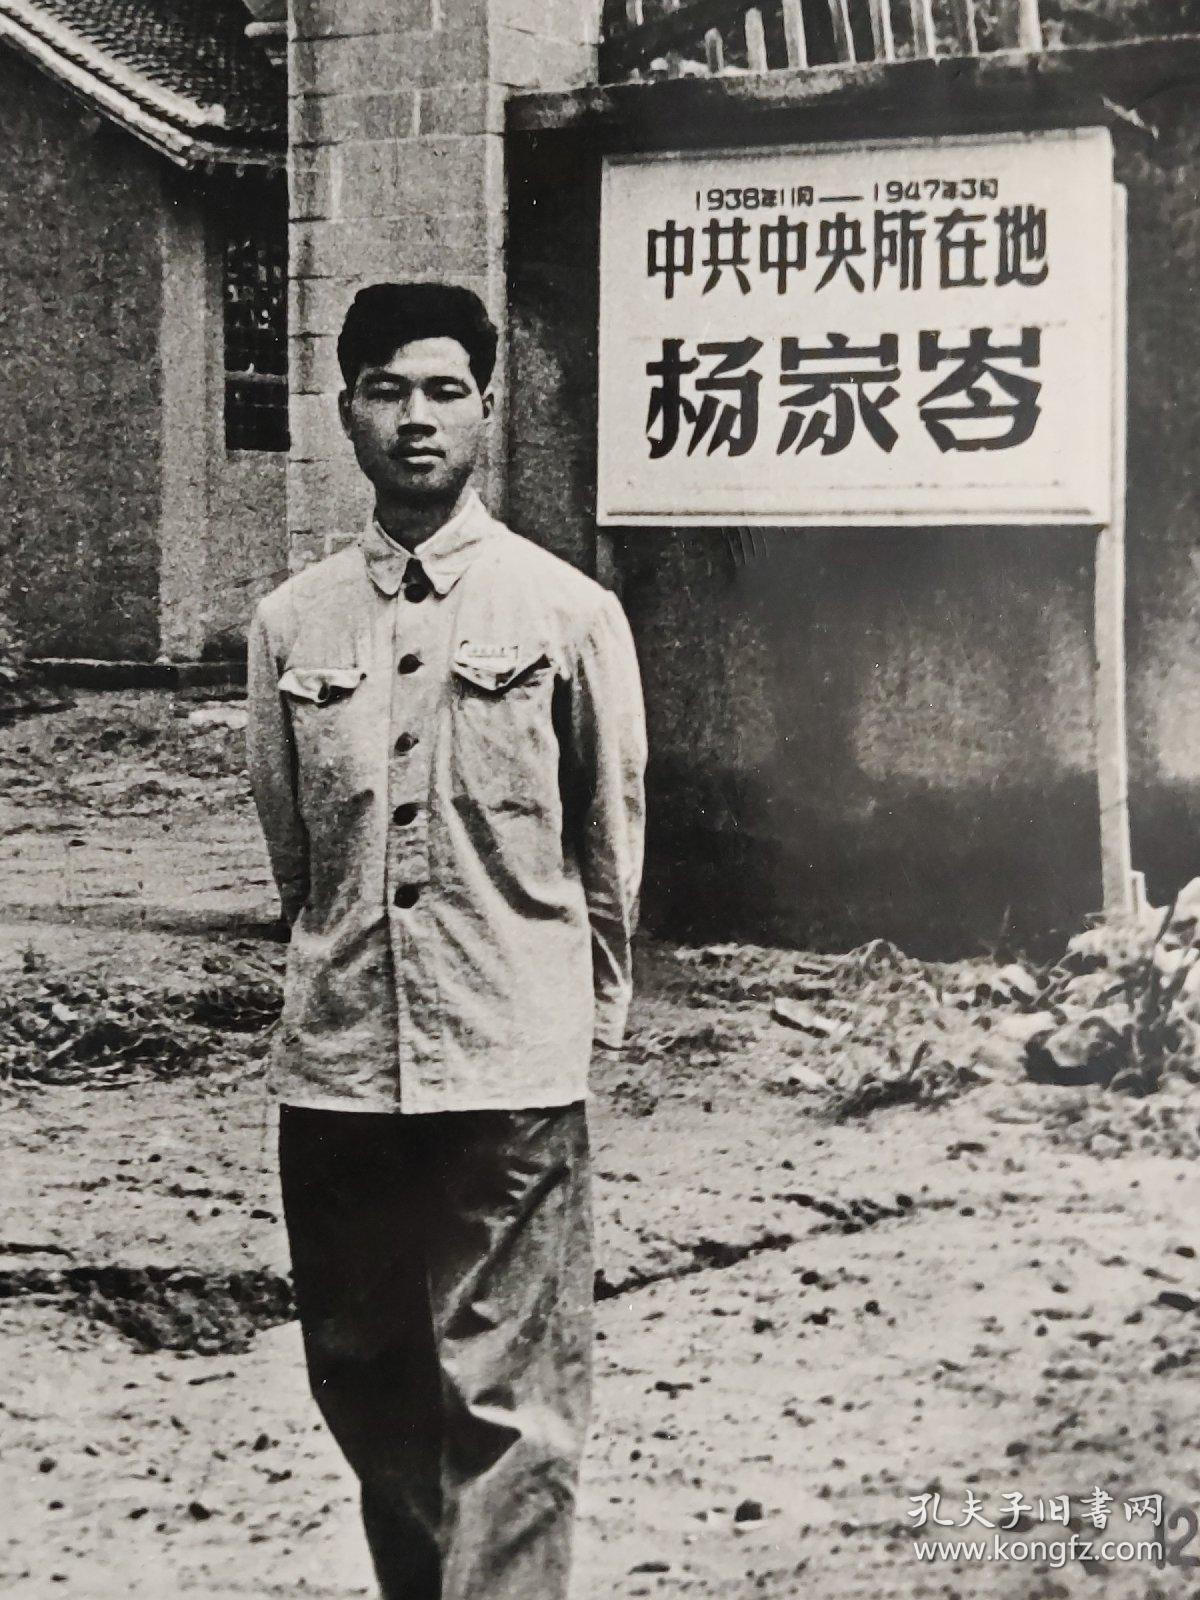 老照片、新华社新闻展览照片：1938年1月---1947年3月 中共中央所在地 杨家岺留影的黑白照片        黑白照片箱 00017